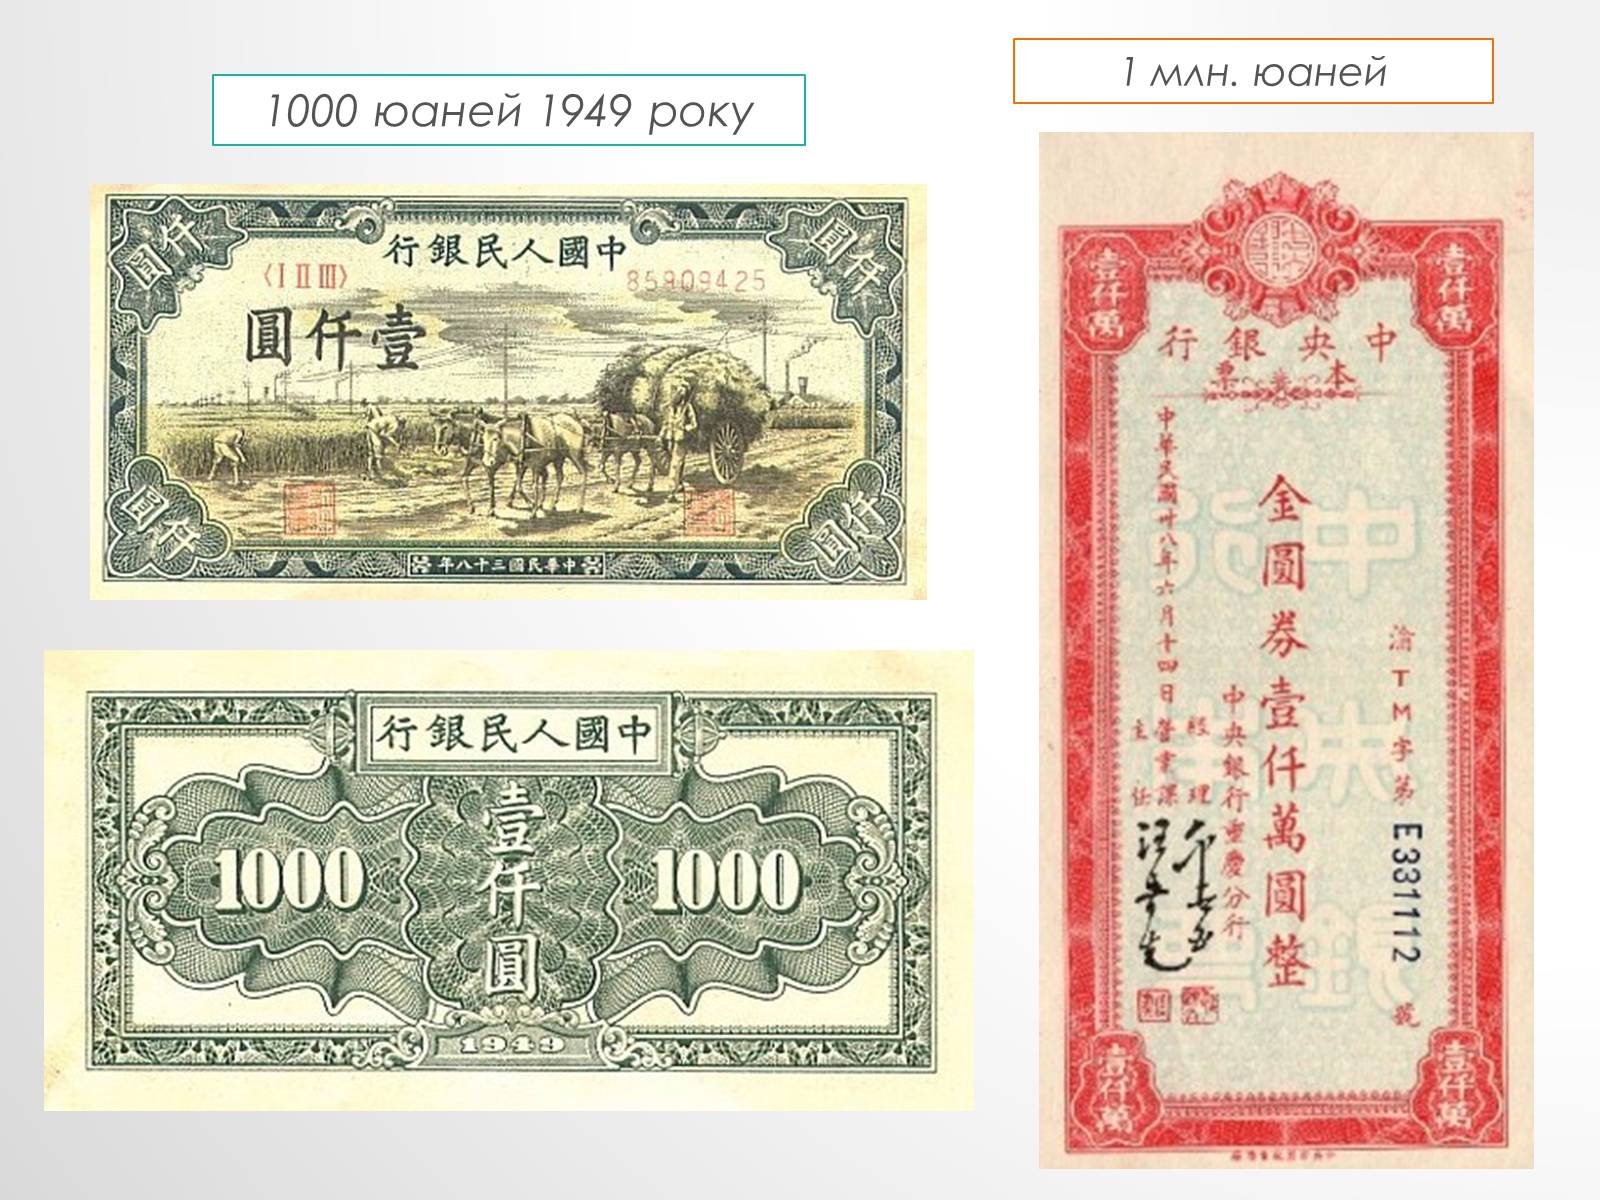 Тысяча долларов в юанях. 1949 Юаней. 1000 Юаней. Миллион юаней. 1000 Юаней купюра.